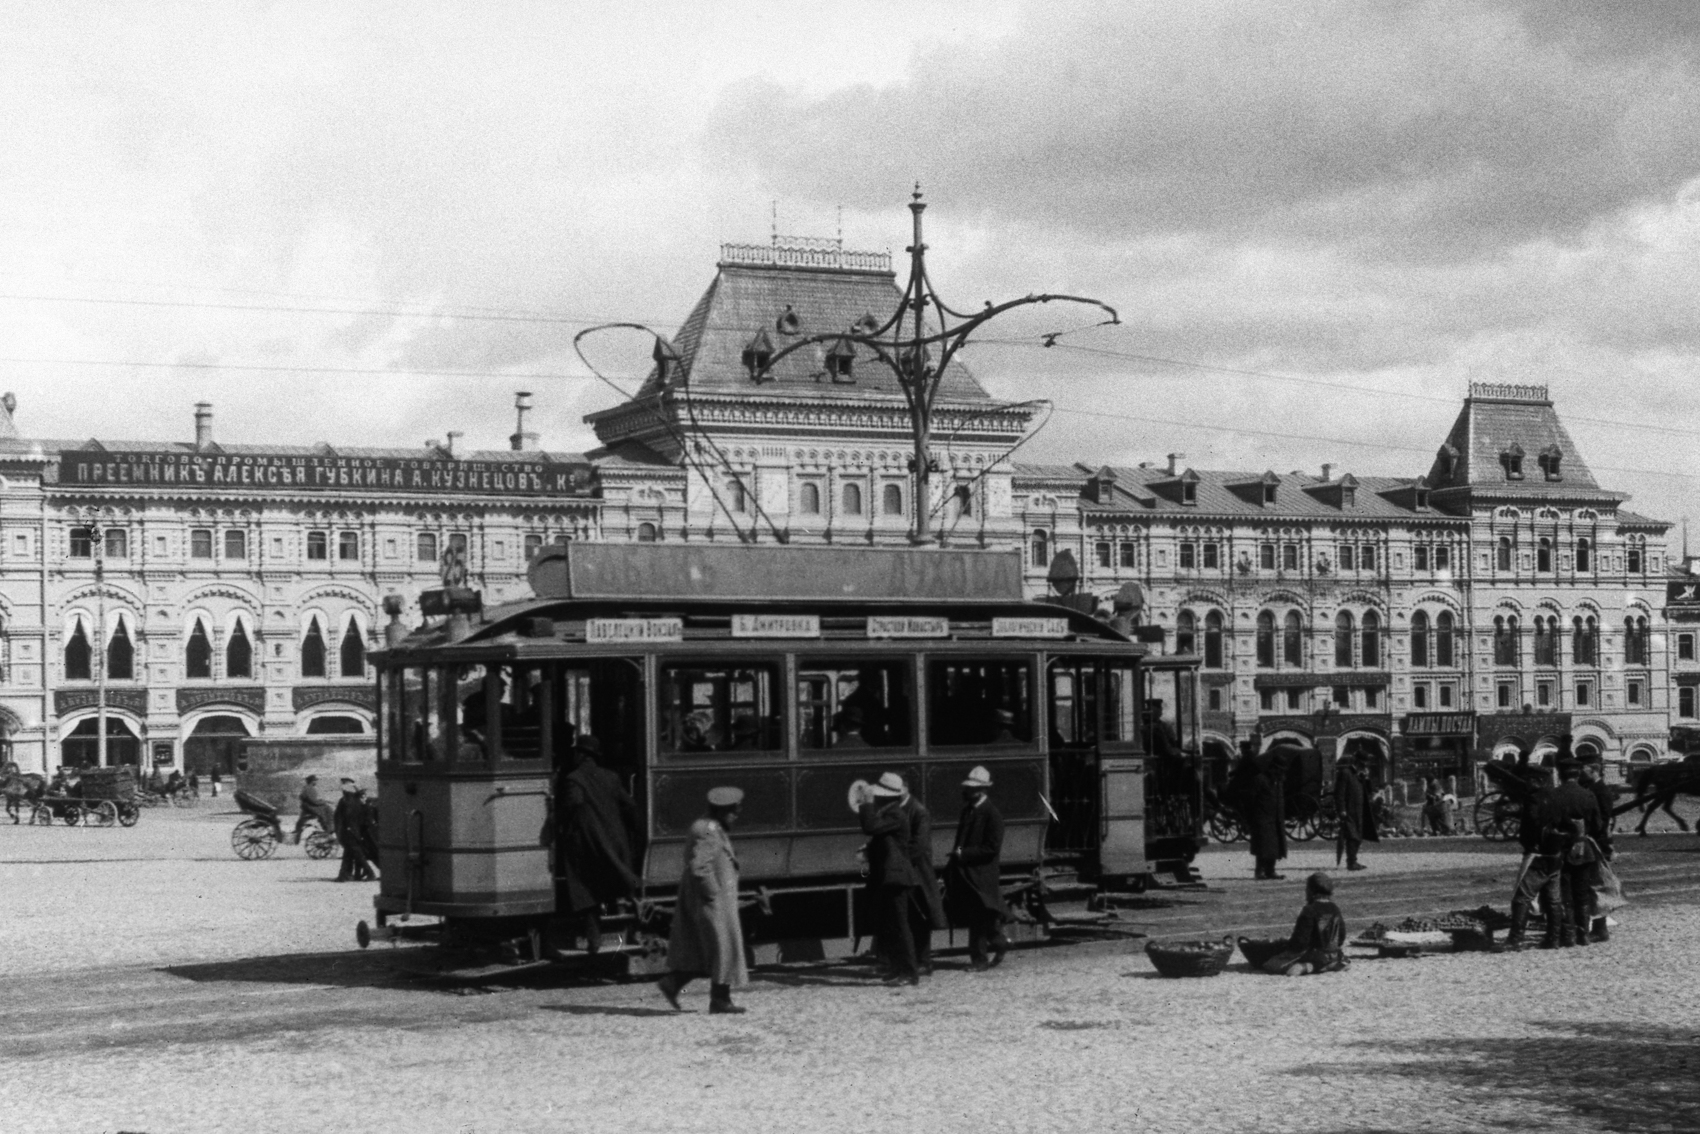 莫斯科, Ganz 2-axle motor car # 68; 莫斯科 — Historical photos — Electric tramway (1898-1920)